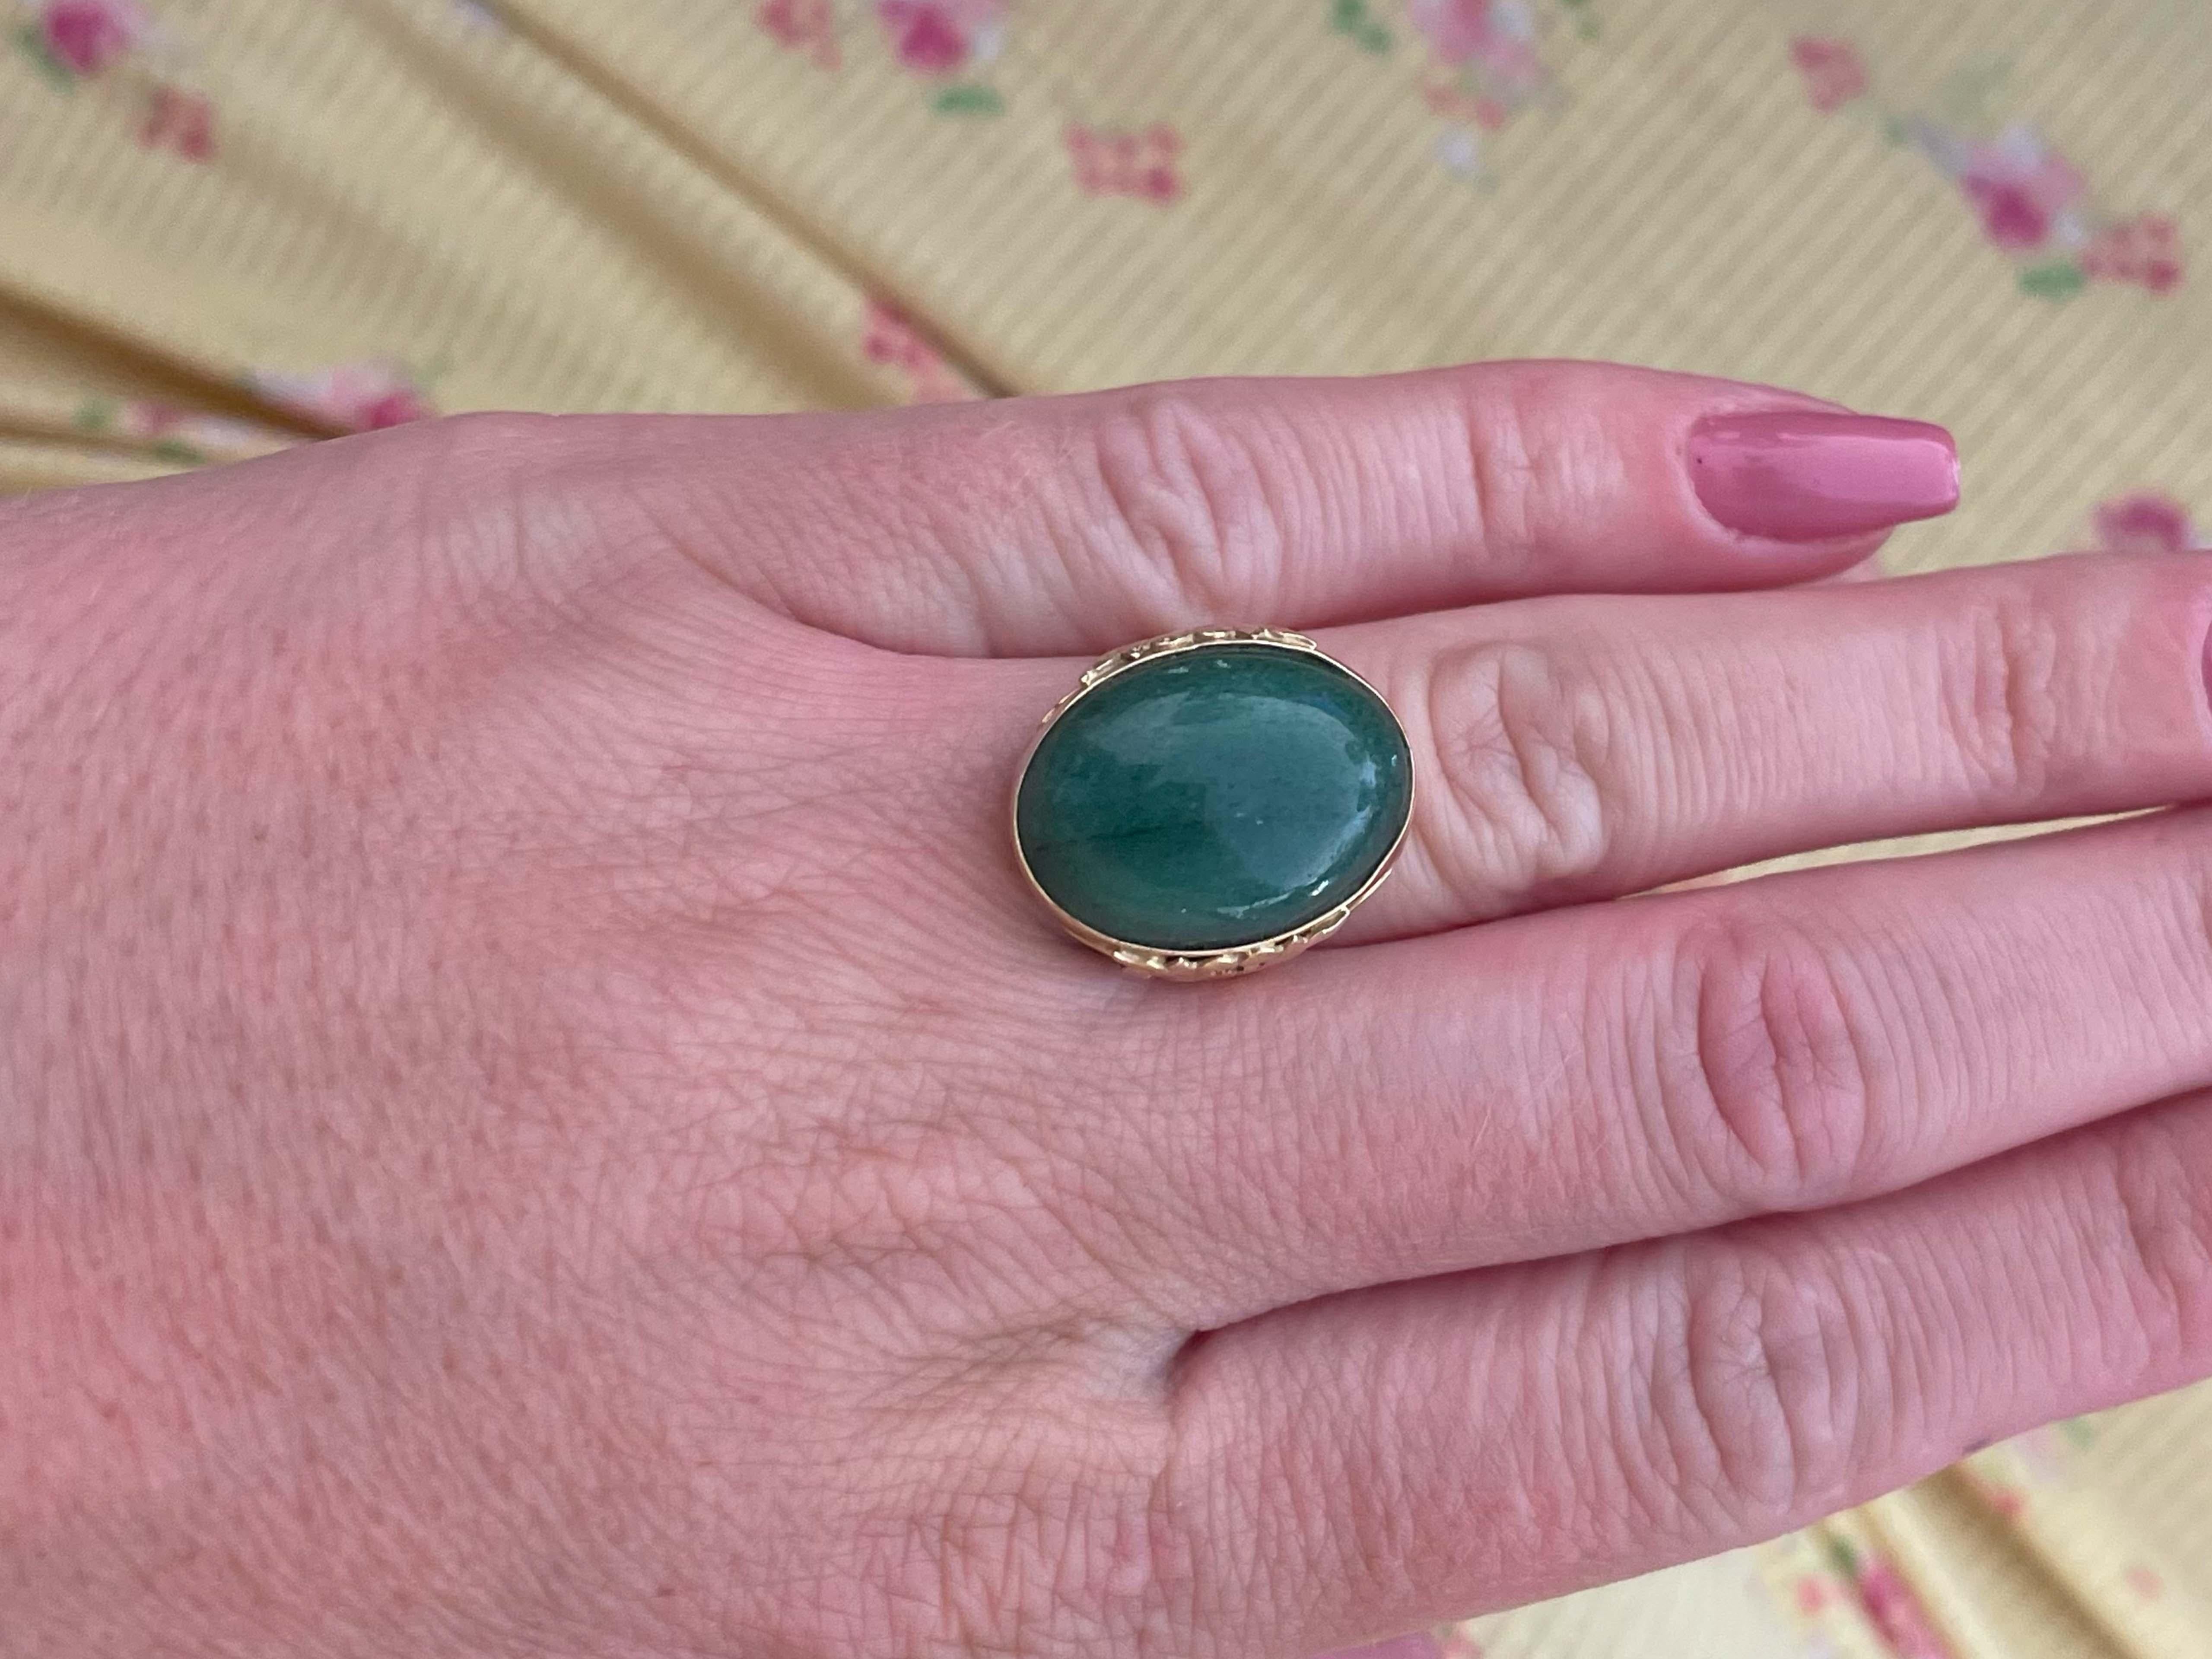 Spécifications de l'anneau :

Designer : Ming's

Métal : Or jaune 14k

Jade : Jade vert

Dimensions du jade : 19,9 mm x 15,2 mm x 5,3 mm

Poids total : 6.0 grammes

Taille de l'anneau : 6 (redimensionnable)

Estampillé : 